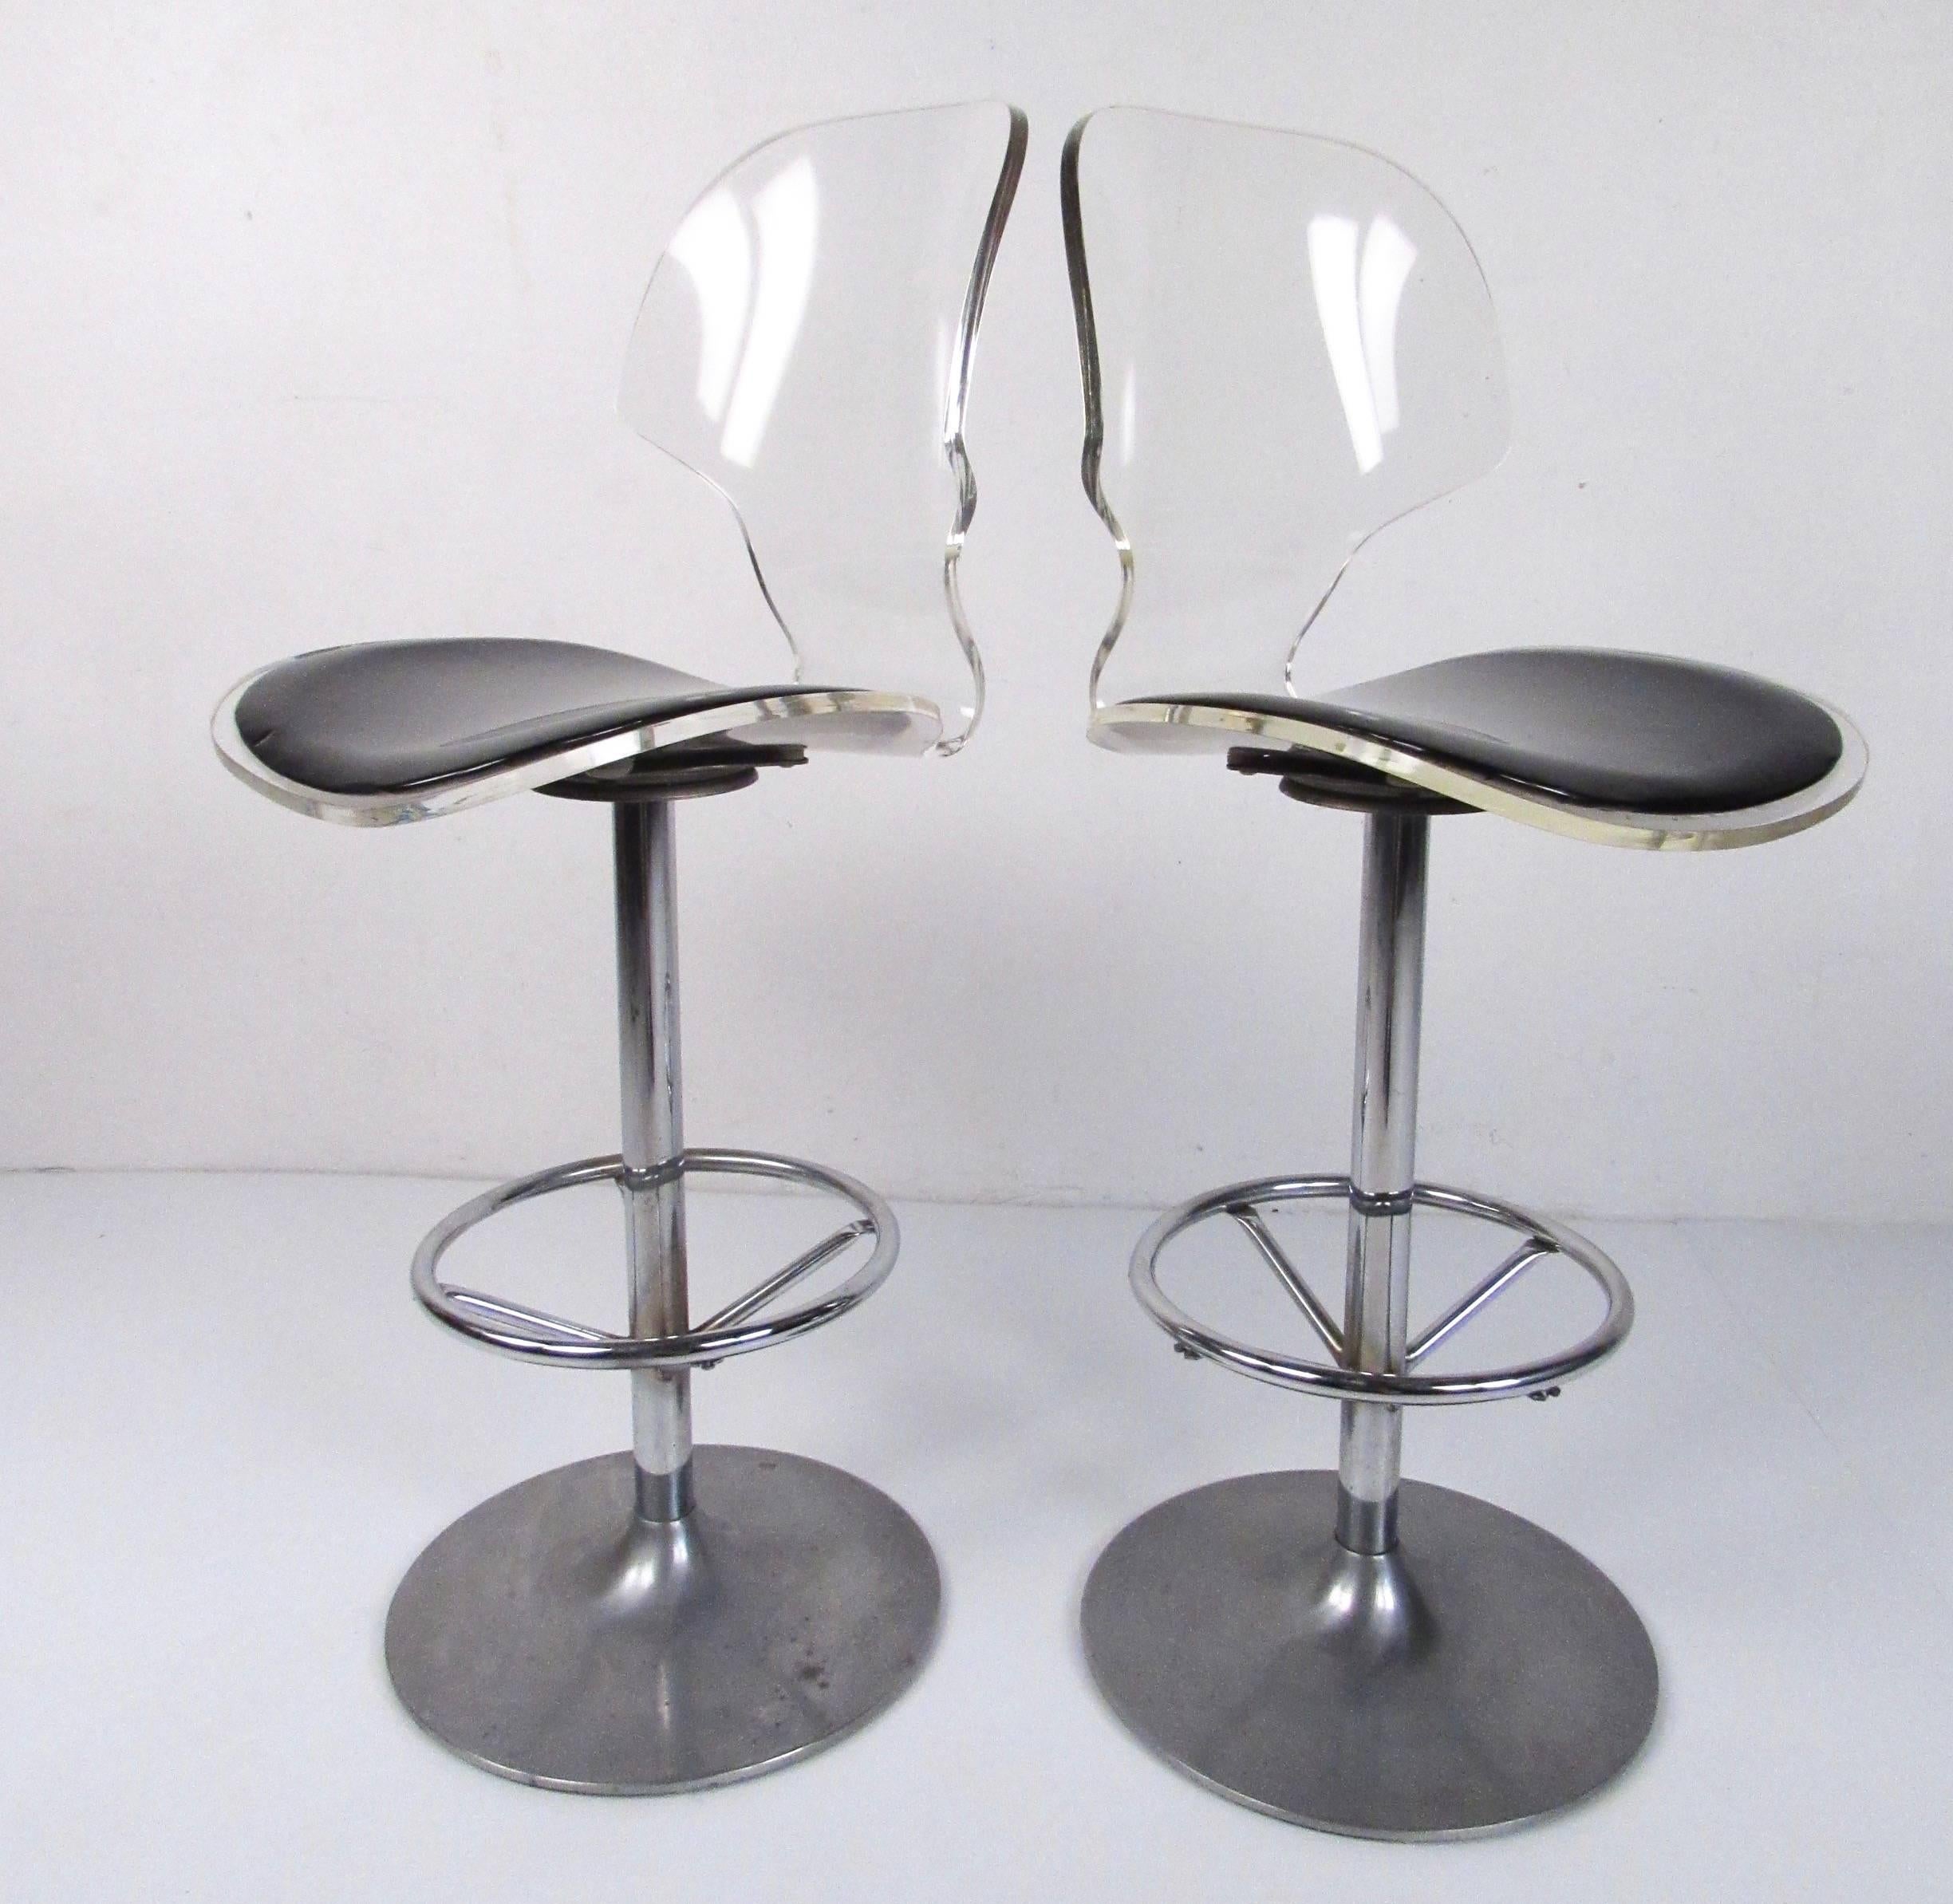 acrylic adjustable bar stools